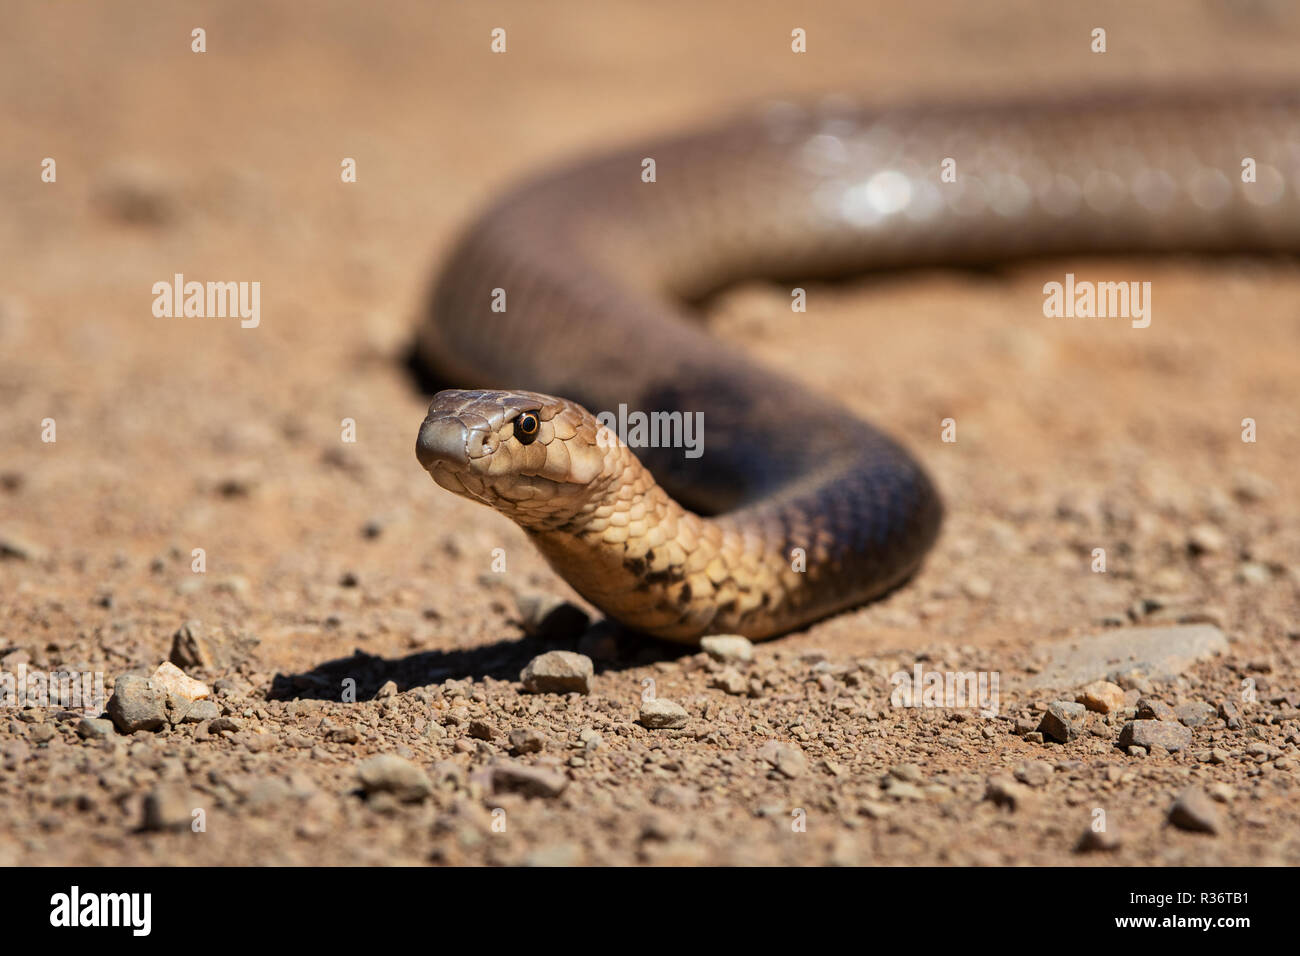 Une sangle-snouted venimeux serpent brun soulevant sa tête. Banque D'Images